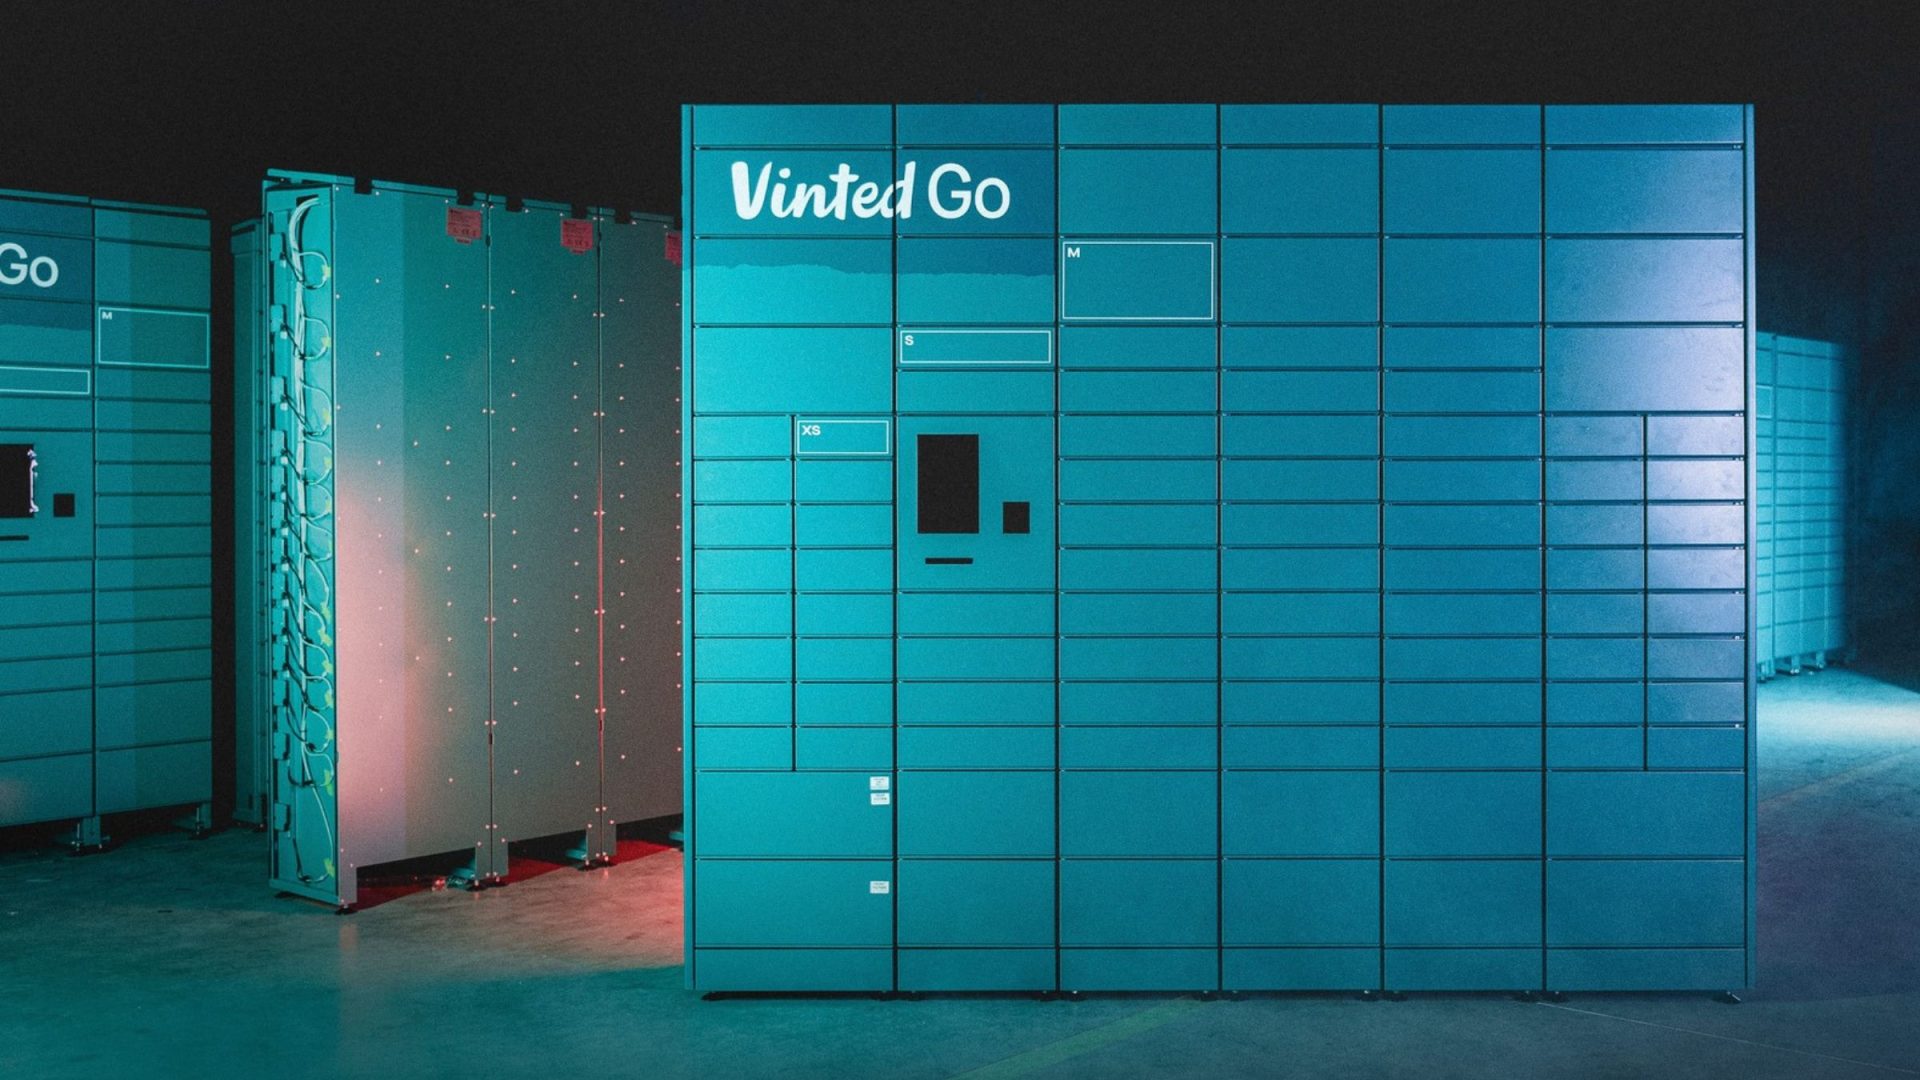 Vinted Go s'étend à Dijon : dépôt et retrait de colis Vinted facilités